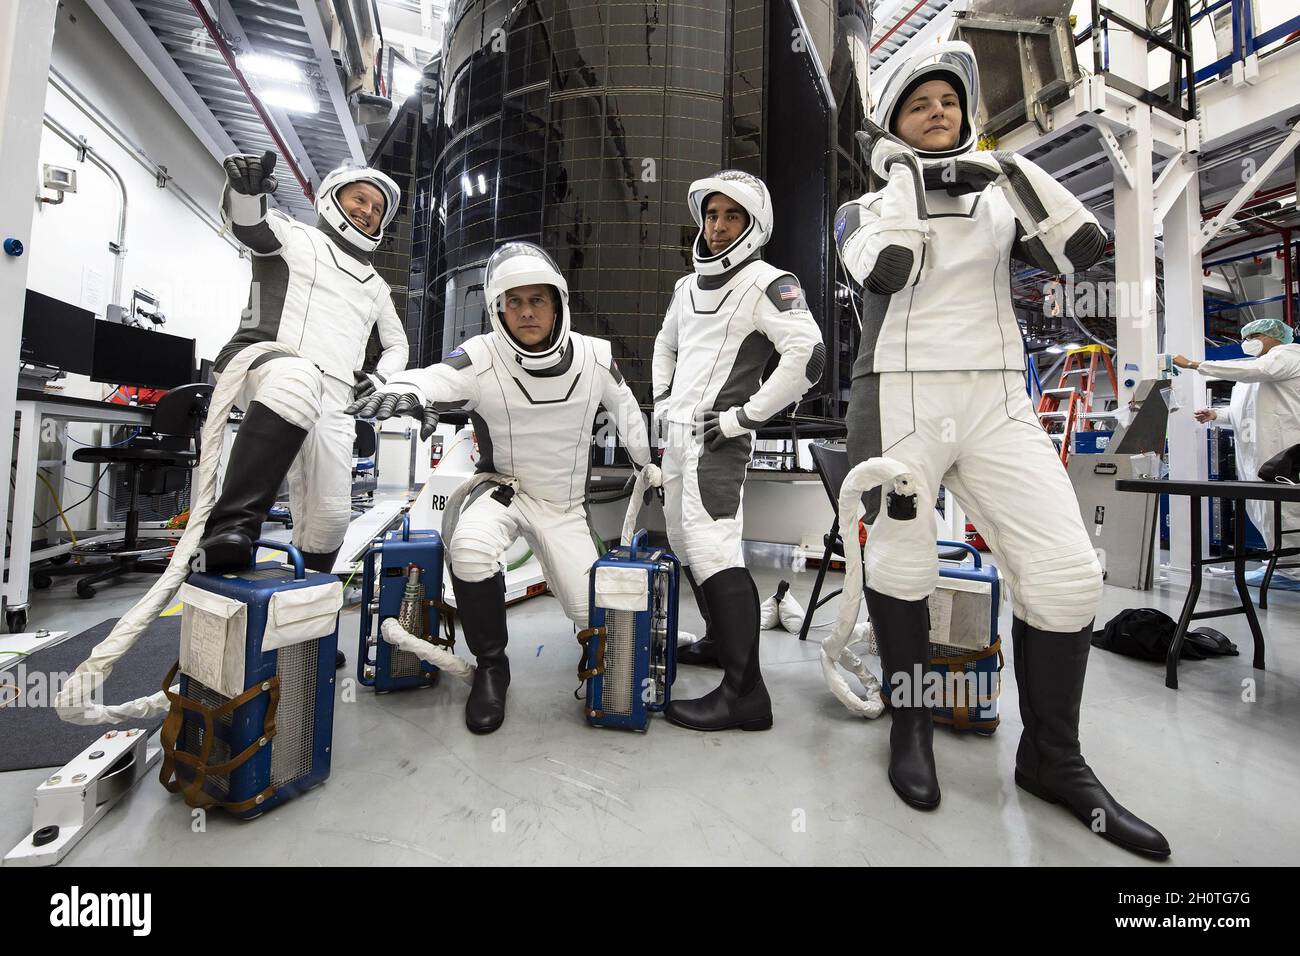 Hawthorne, Usa. Oktober 2021. Die Astronauten von SpaceX Crew-3 posieren für ein Porträt in ihren Anzügen während einer Trainingseinheit am 9. Oktober 2021. Von links sind der ESA-Astronaut Matthias Maurer und die NASA-Astronauten Raja Chari, Thomas Marshburn und Kayla Barron zu sehen. Chari ist Kommandant, Marshburn ist der Pilot und Barron und Maurer sind beide Missionsspezialisten. Foto von SpaceX/UPI Credit: UPI/Alamy Live News Stockfoto